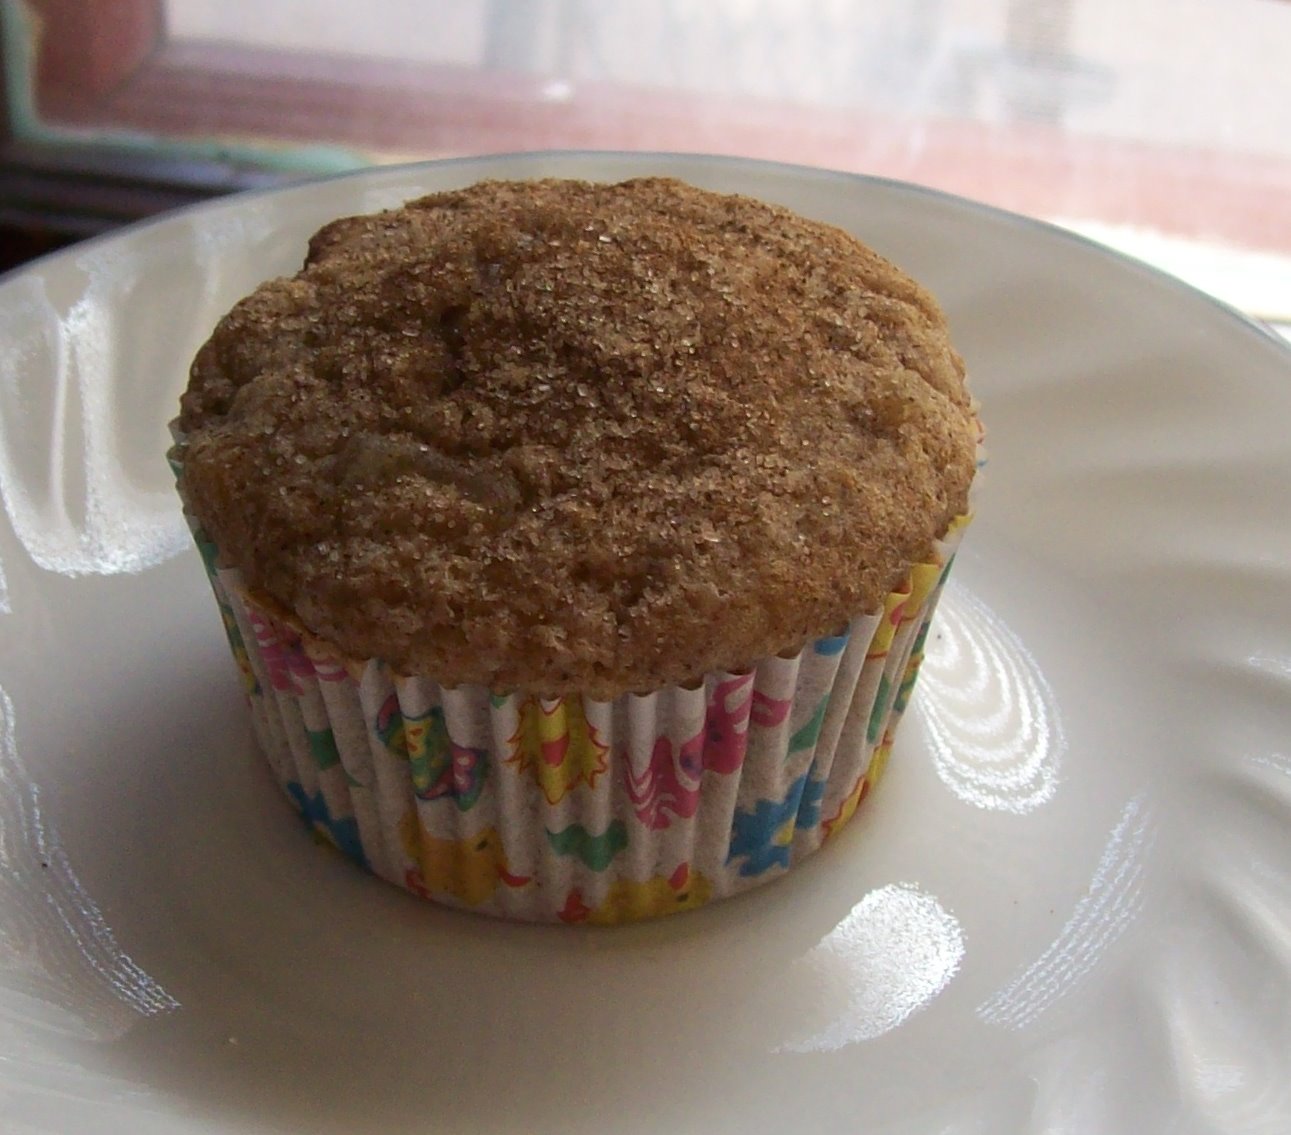 [muffin.jpg]